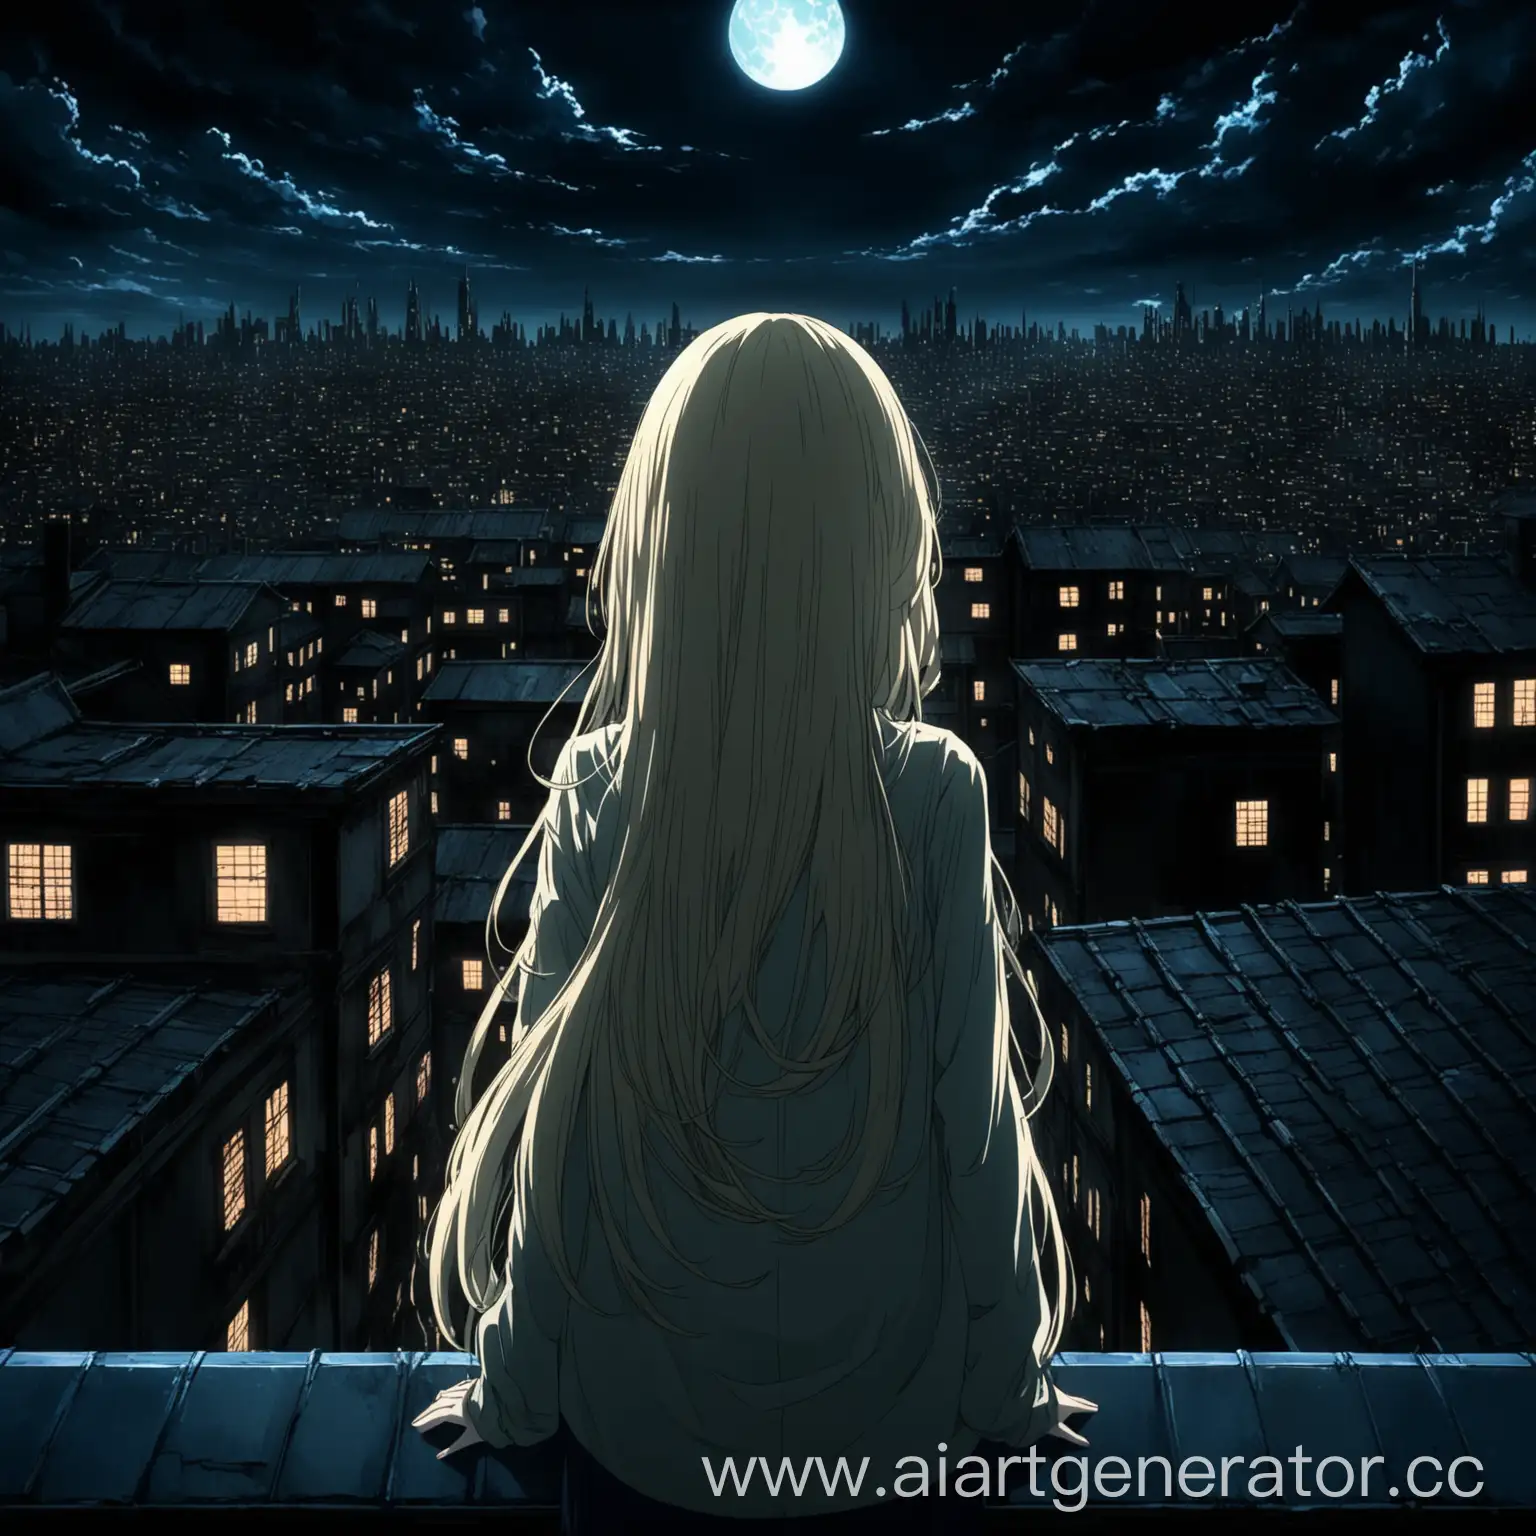 аниме девушка с длинными светлыми волосами смотрит со спины с крыши дома на тёмный город